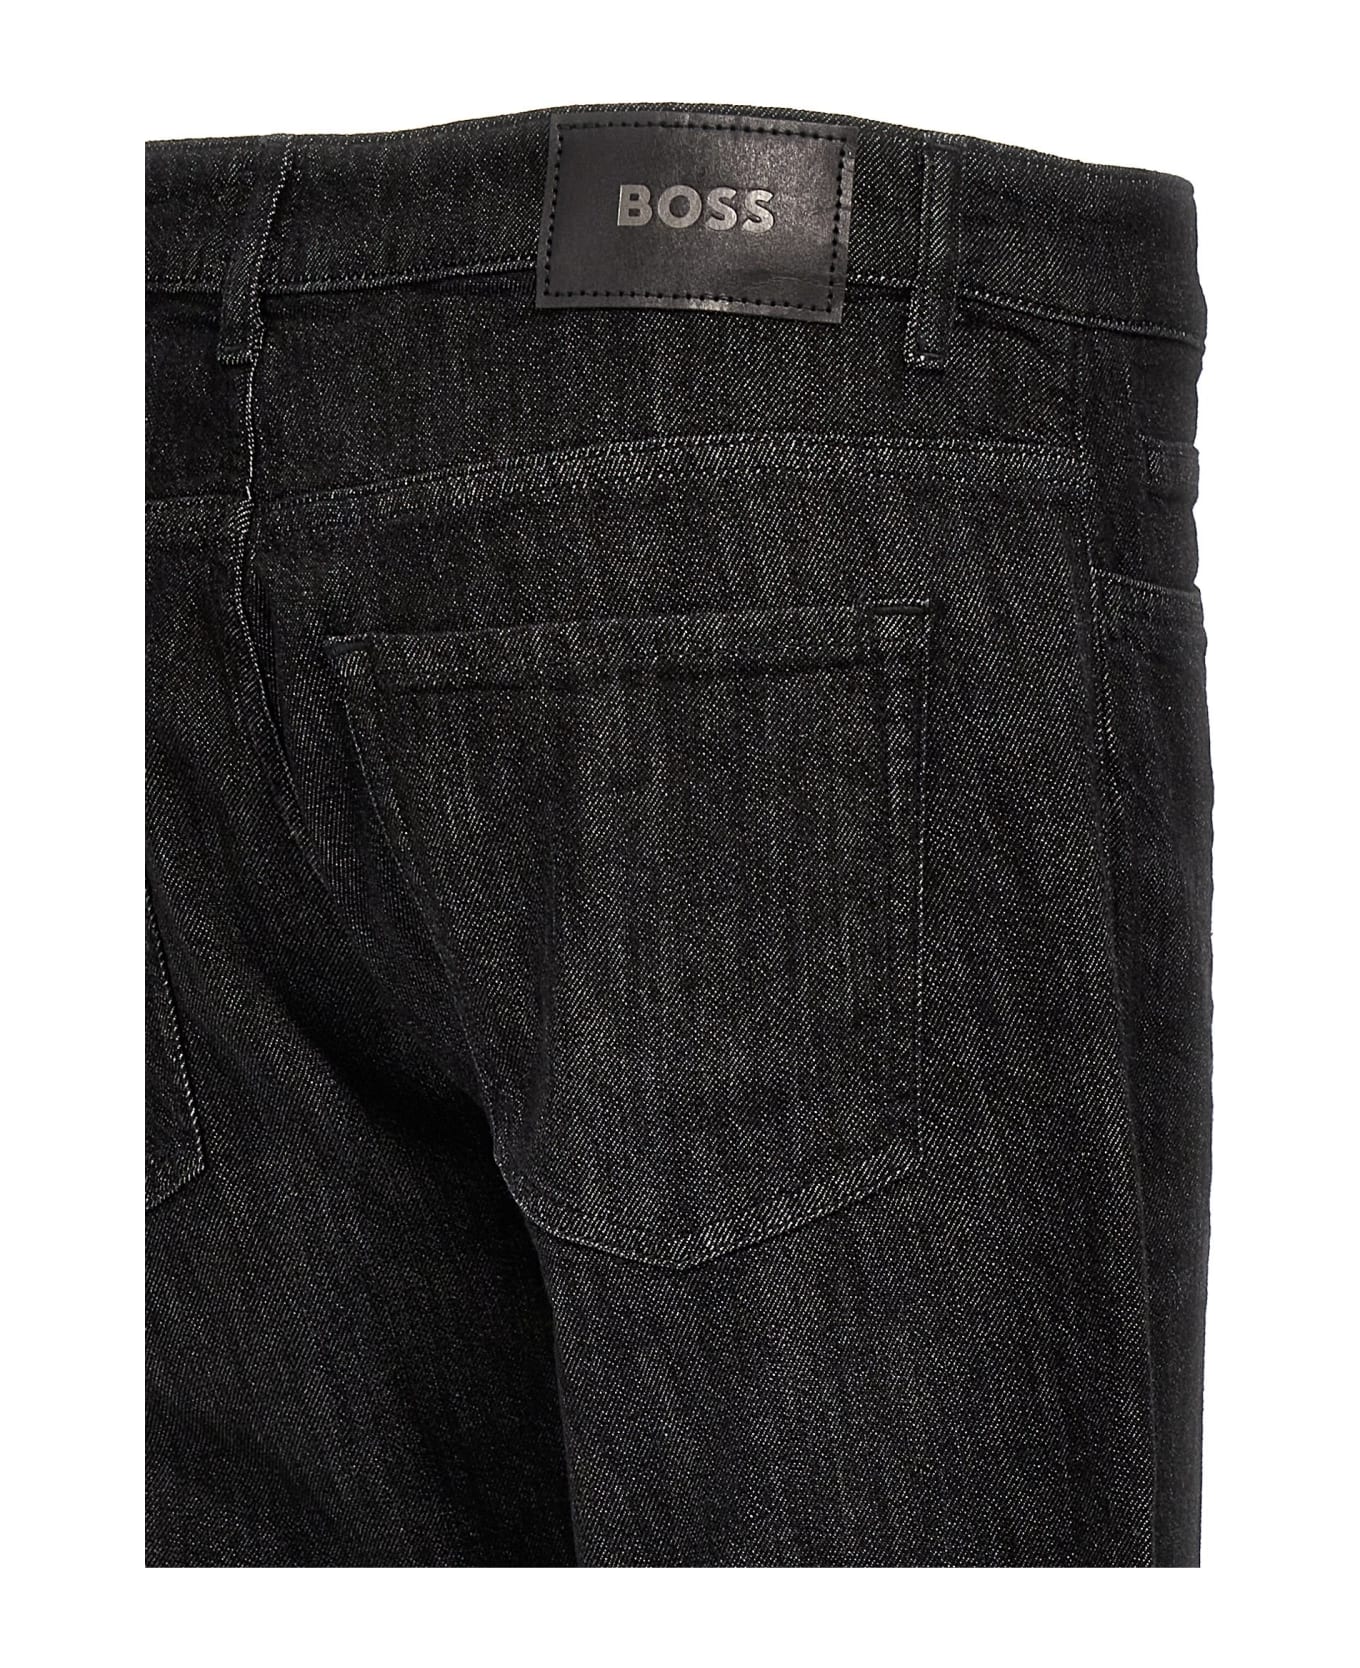 Hugo Boss 'delaware' Jeans - Black   デニム